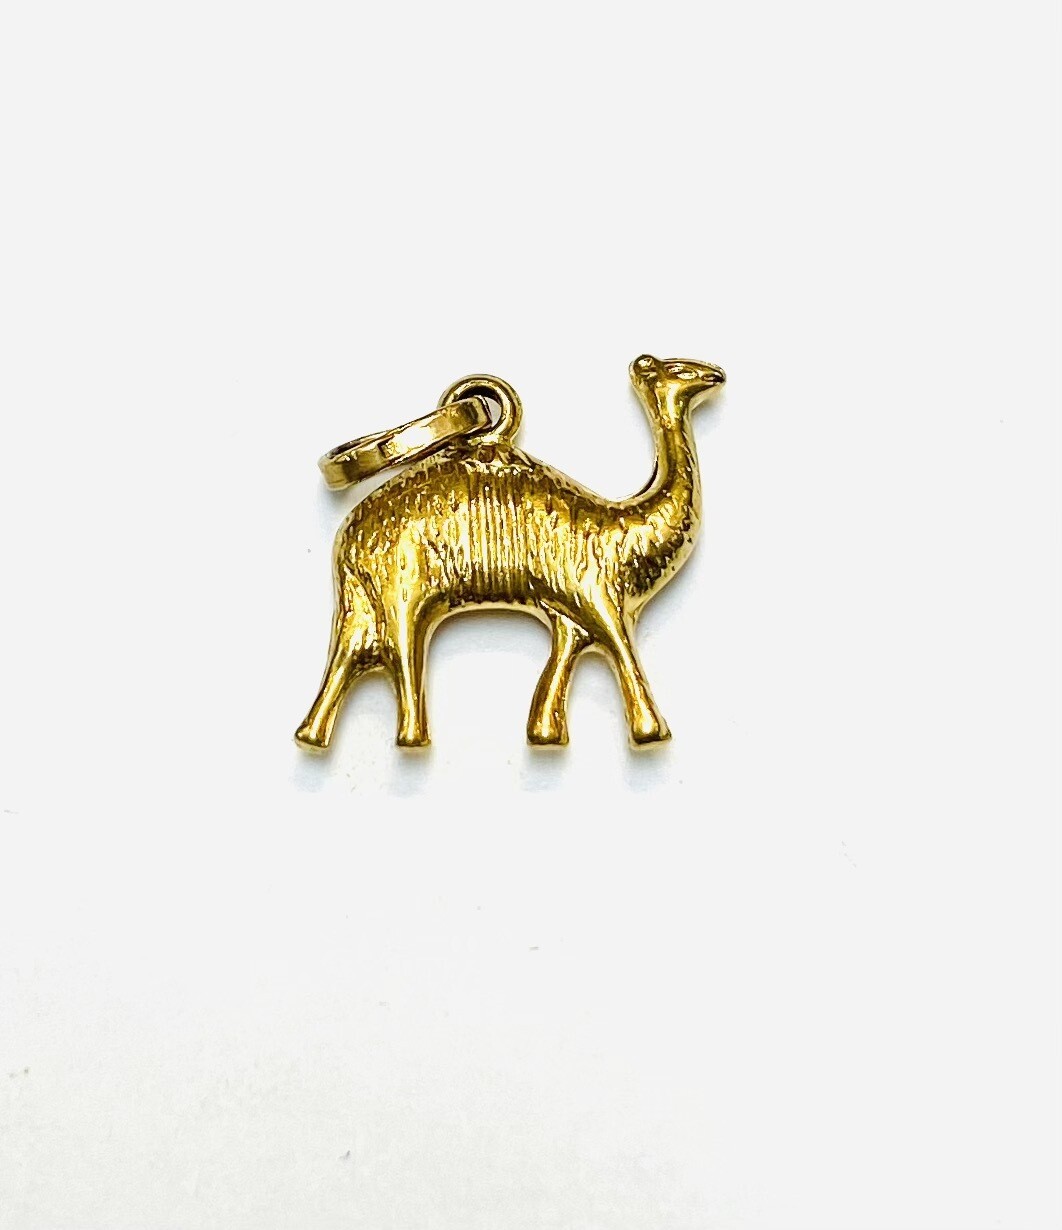 9ct vintage camel charm / pendant